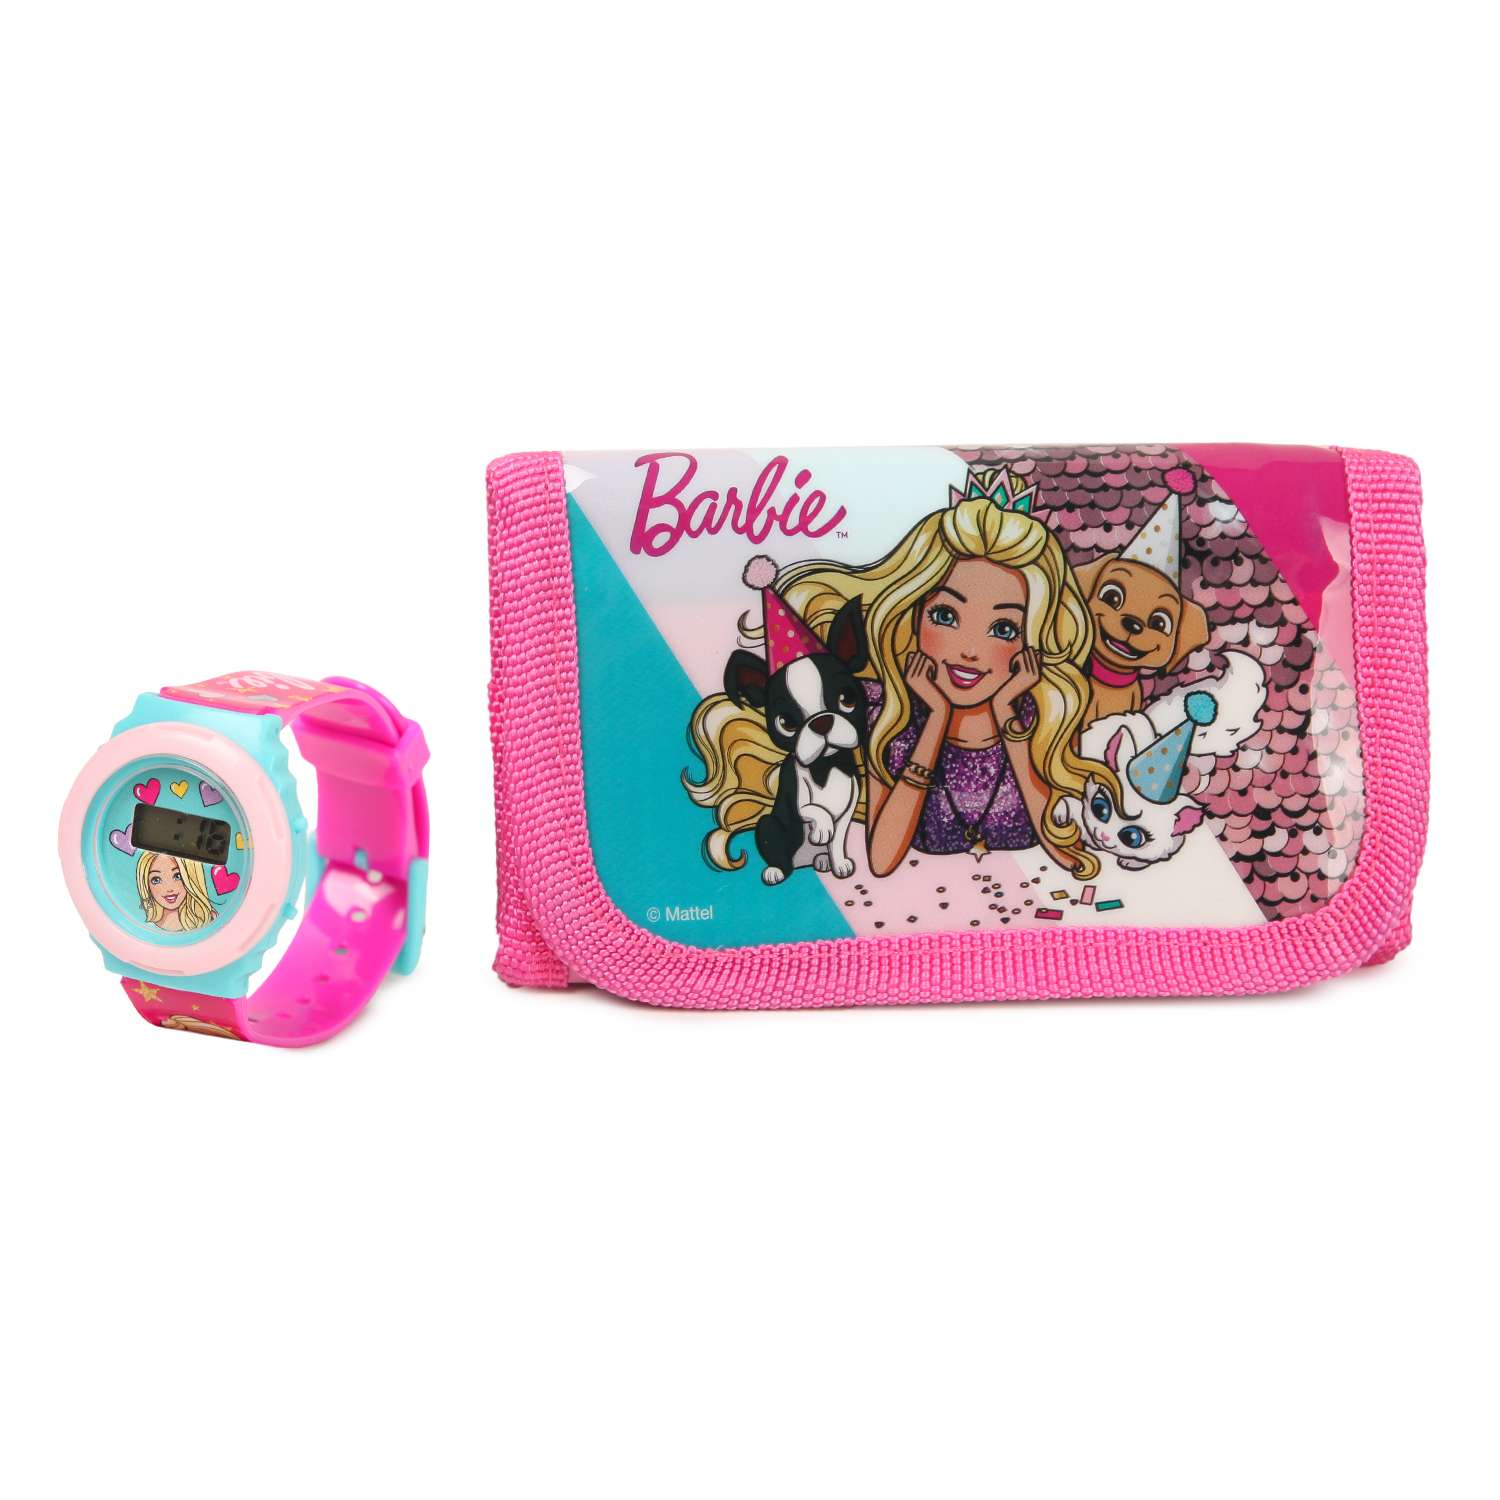 Набор Barbie часы+кошелек BRB0040 - фото 1